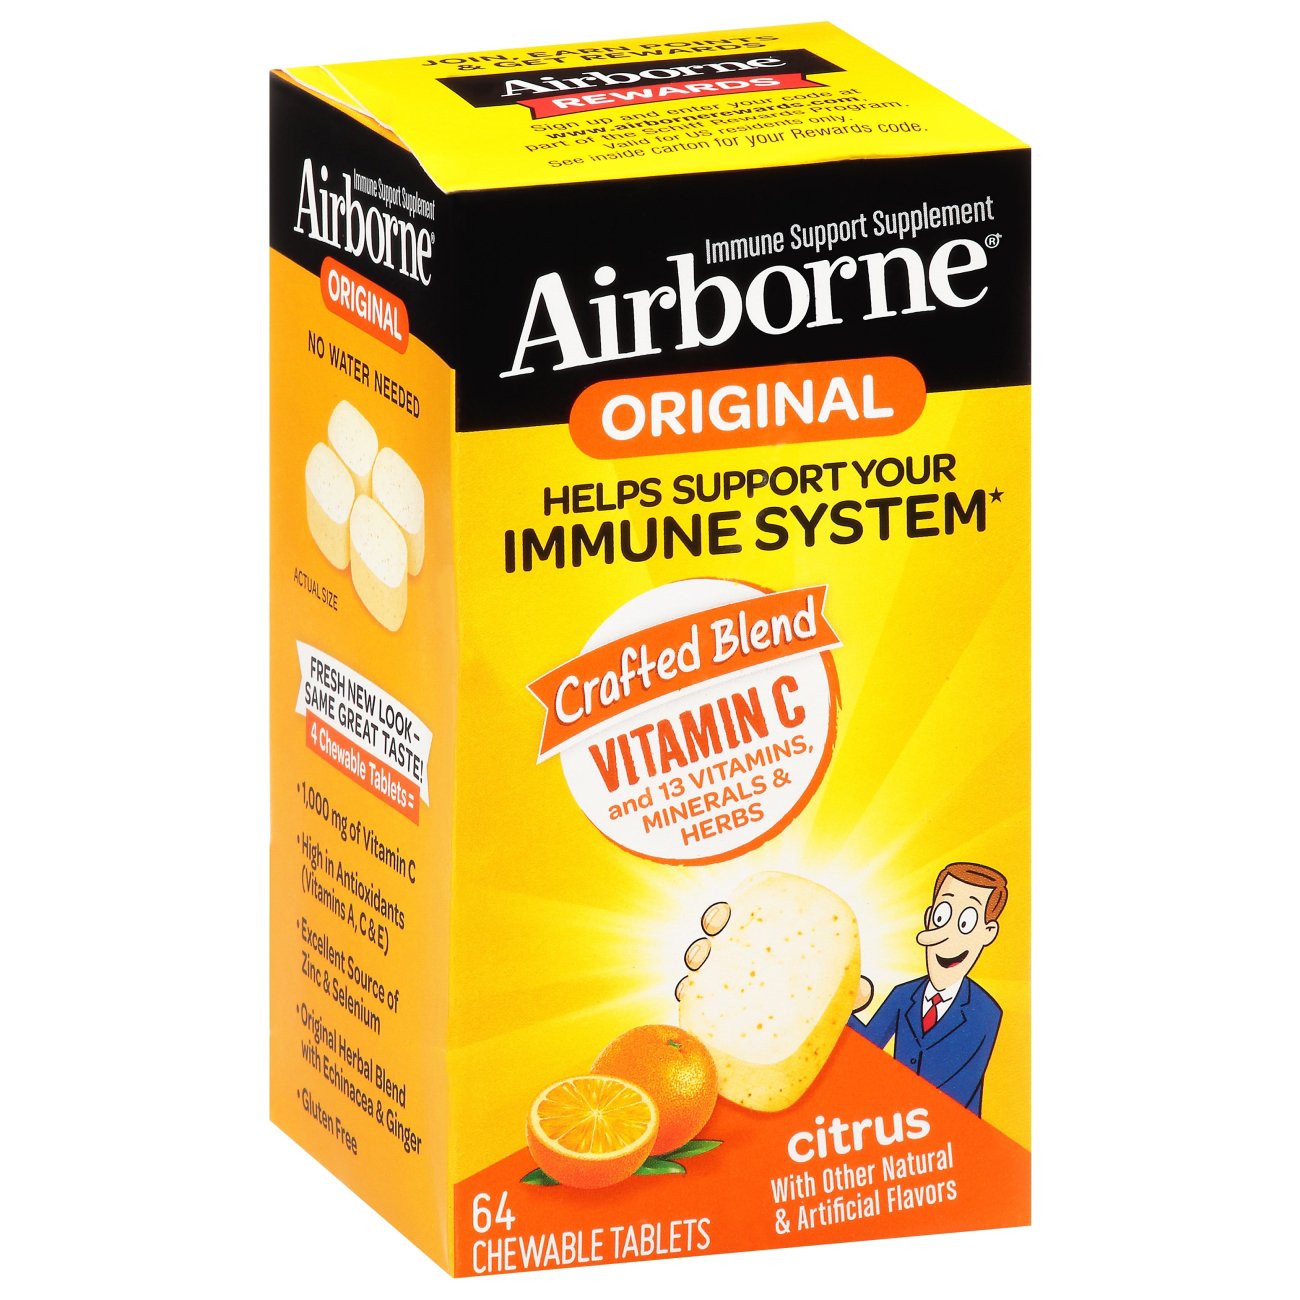 Airborne Airborne Chewable Tablets Citrus Flavor - Shop Vitamins A-Z at